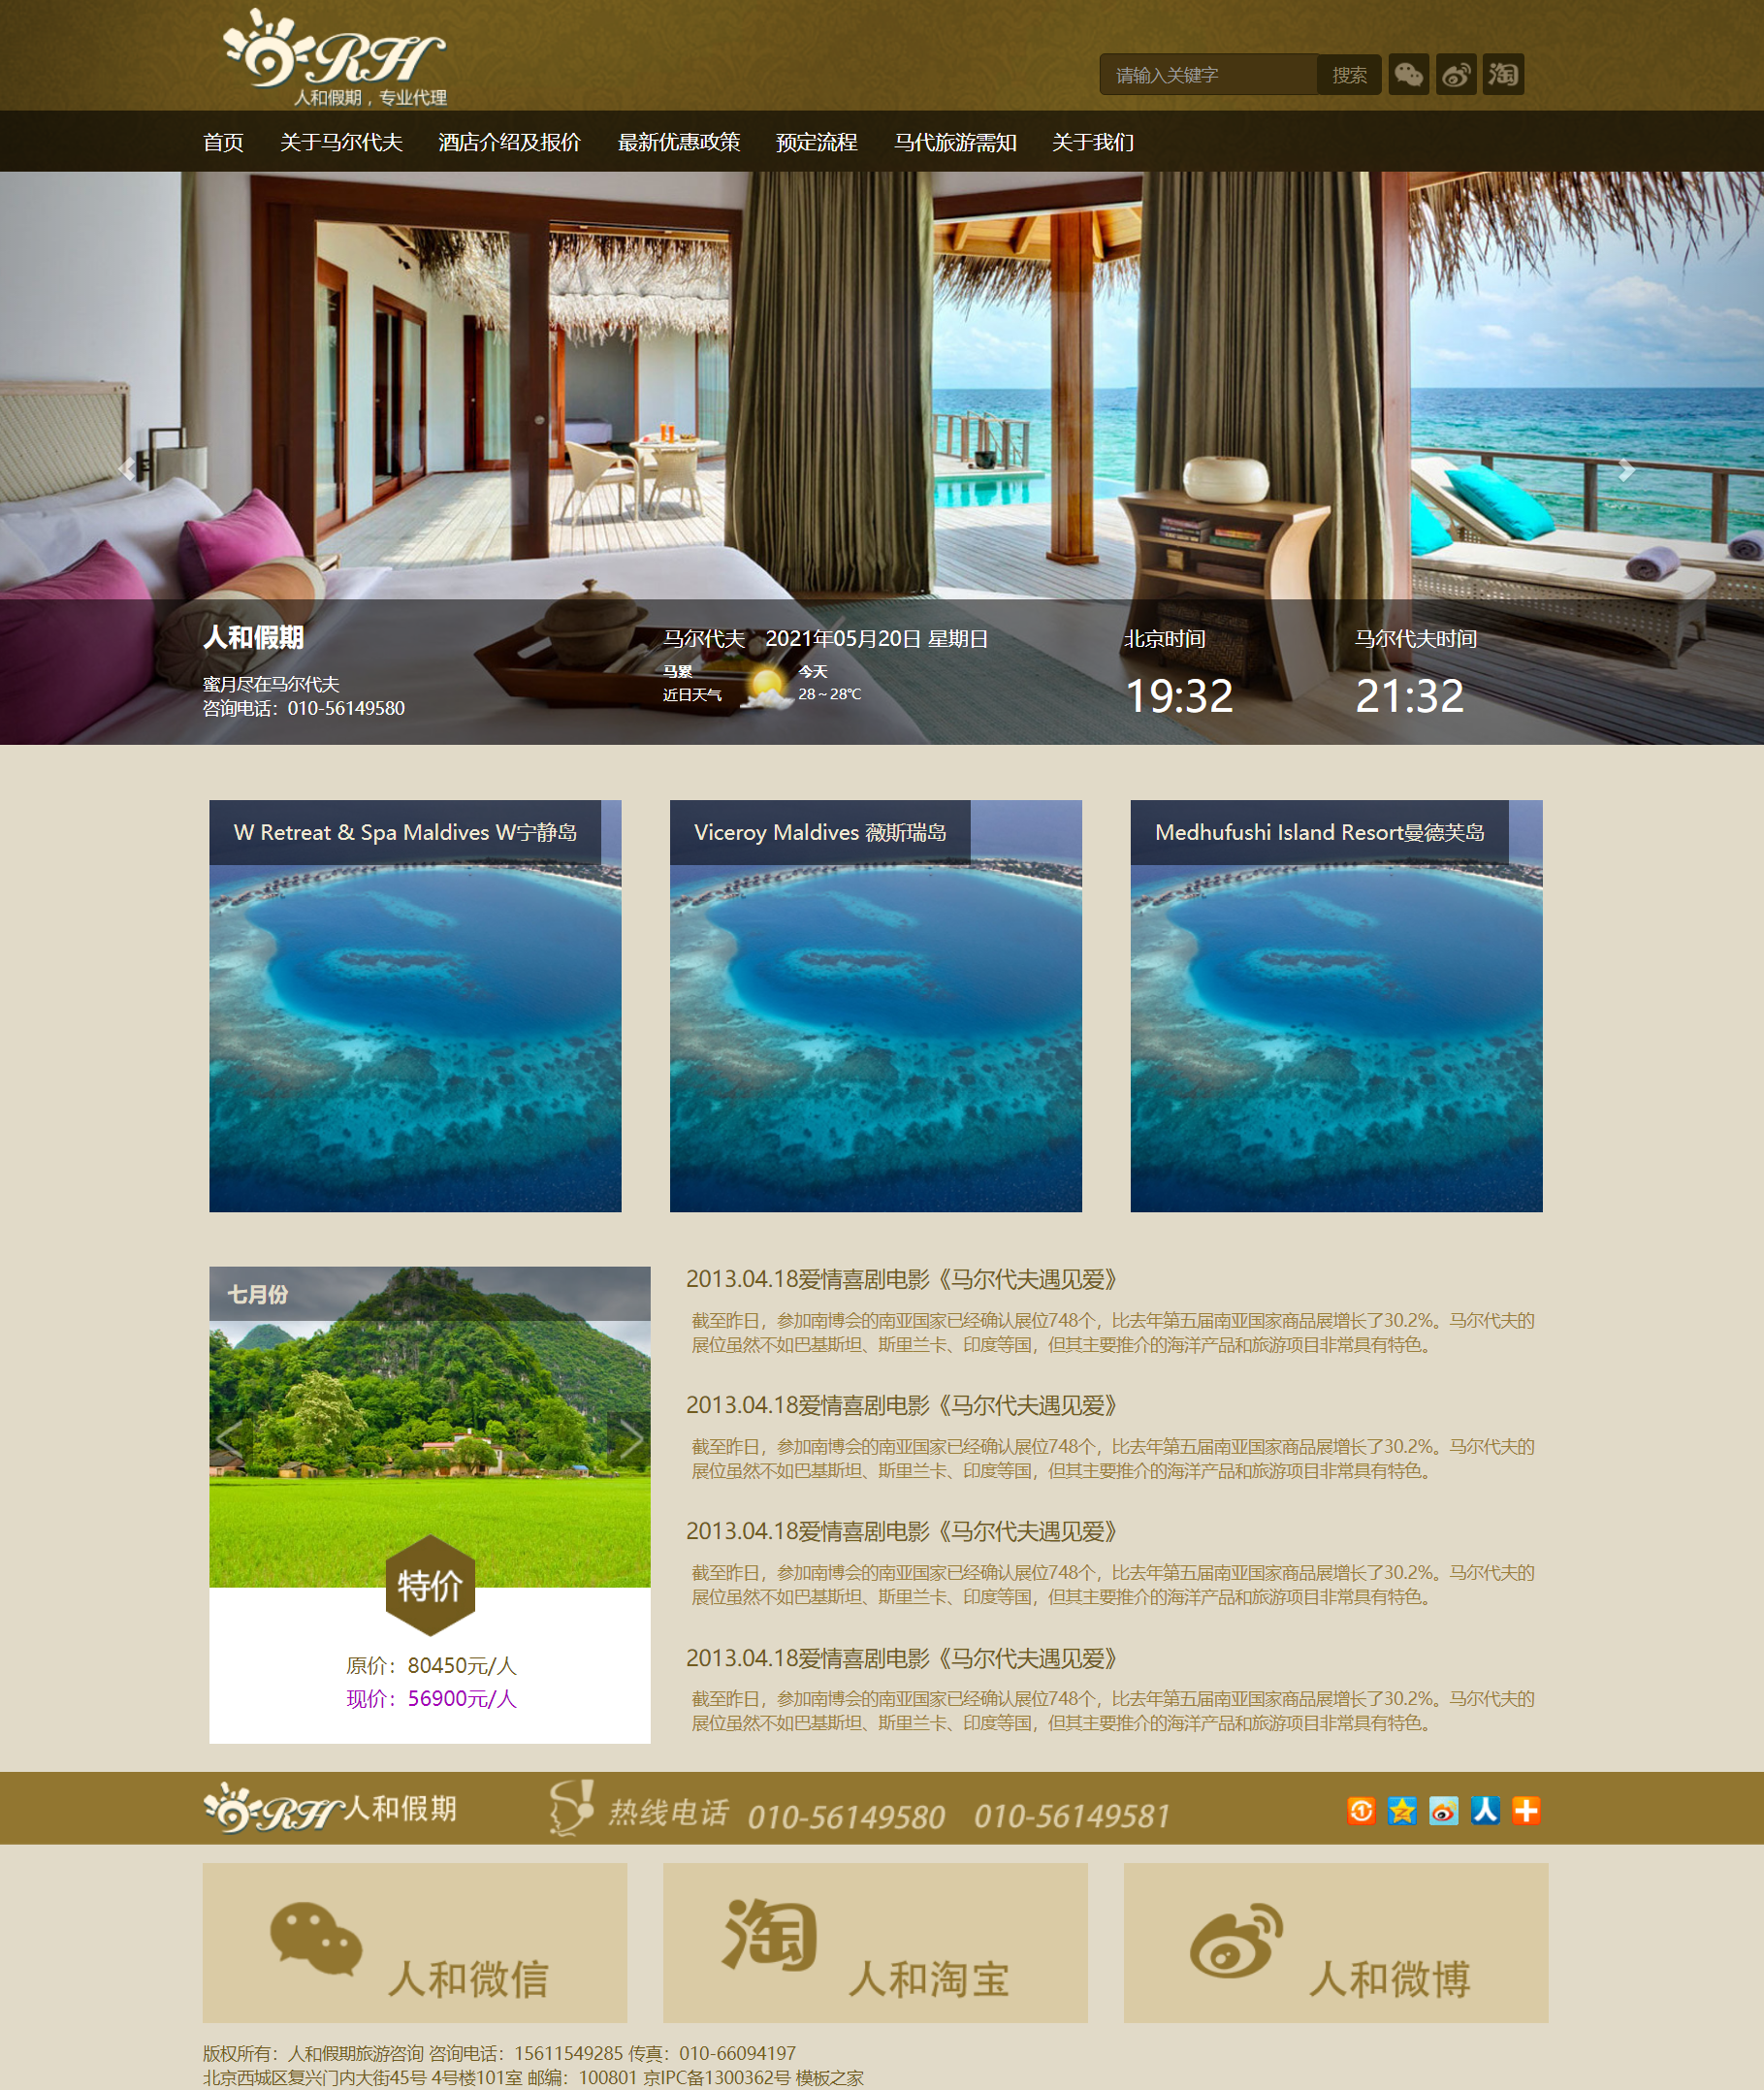 棕色大气风格响应式假期旅游咨询企业网站模板